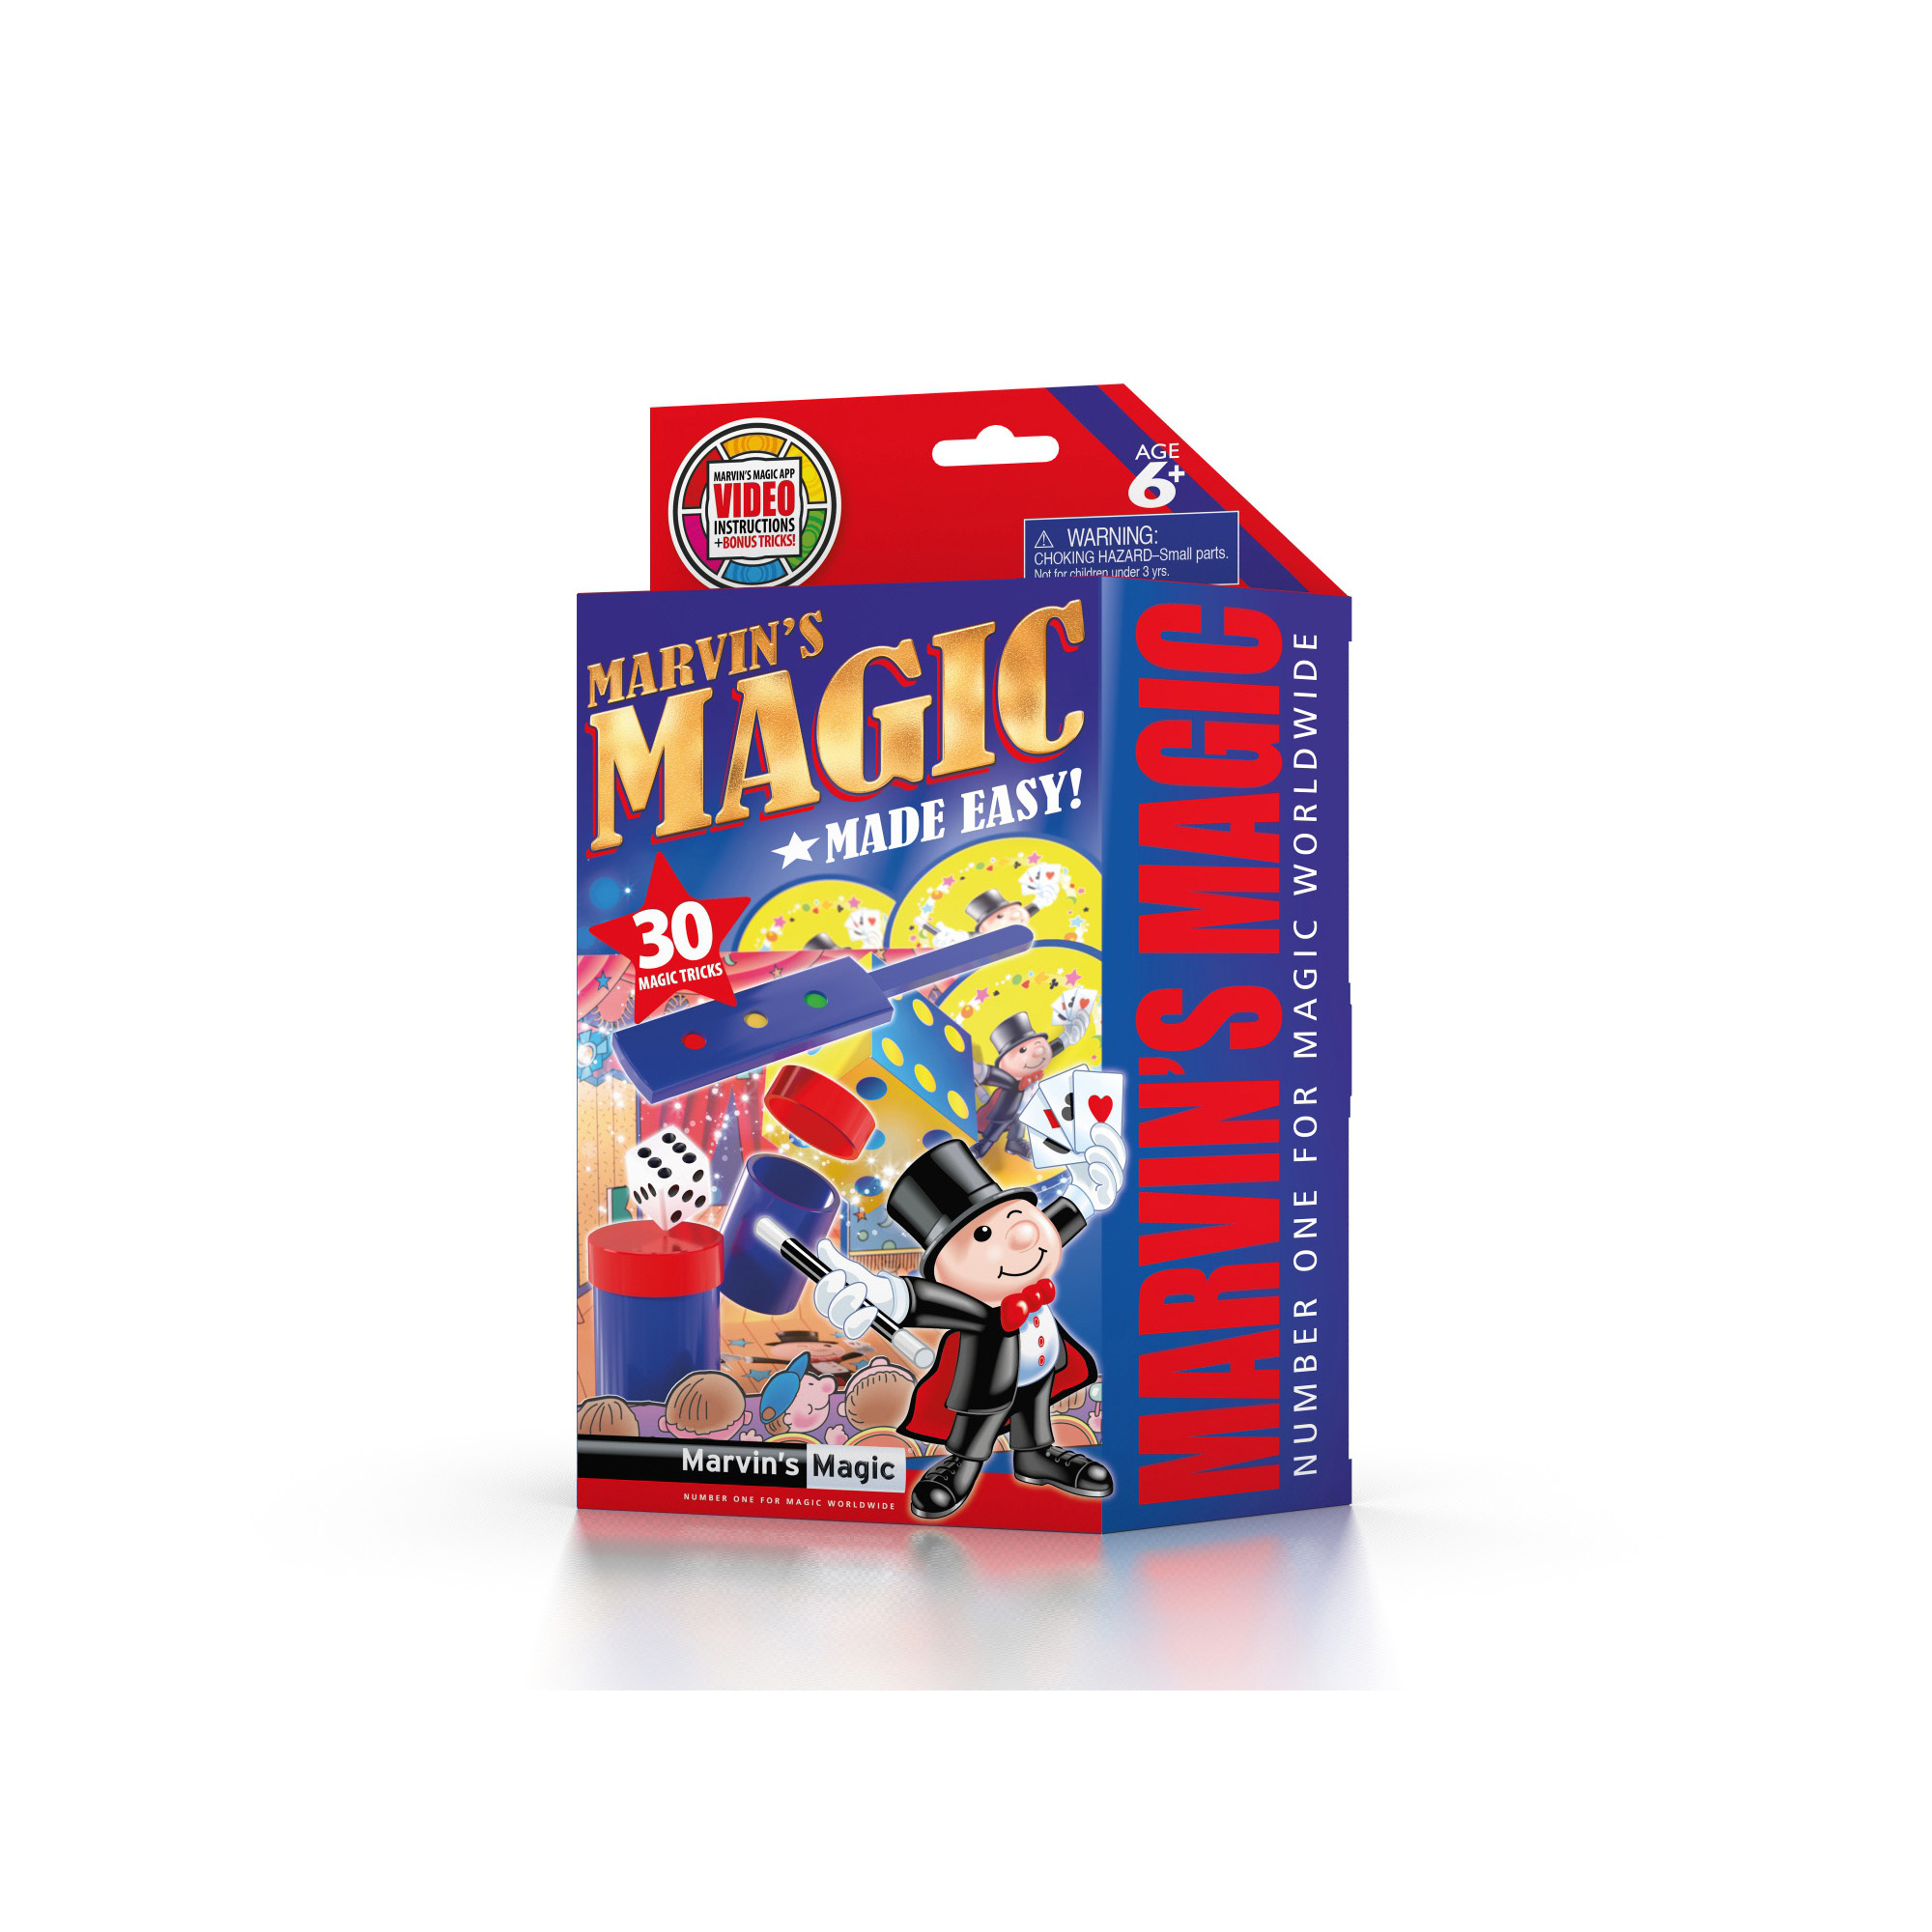 Marvin's amazing magic 30 tricks 3 - Marvin's Magic